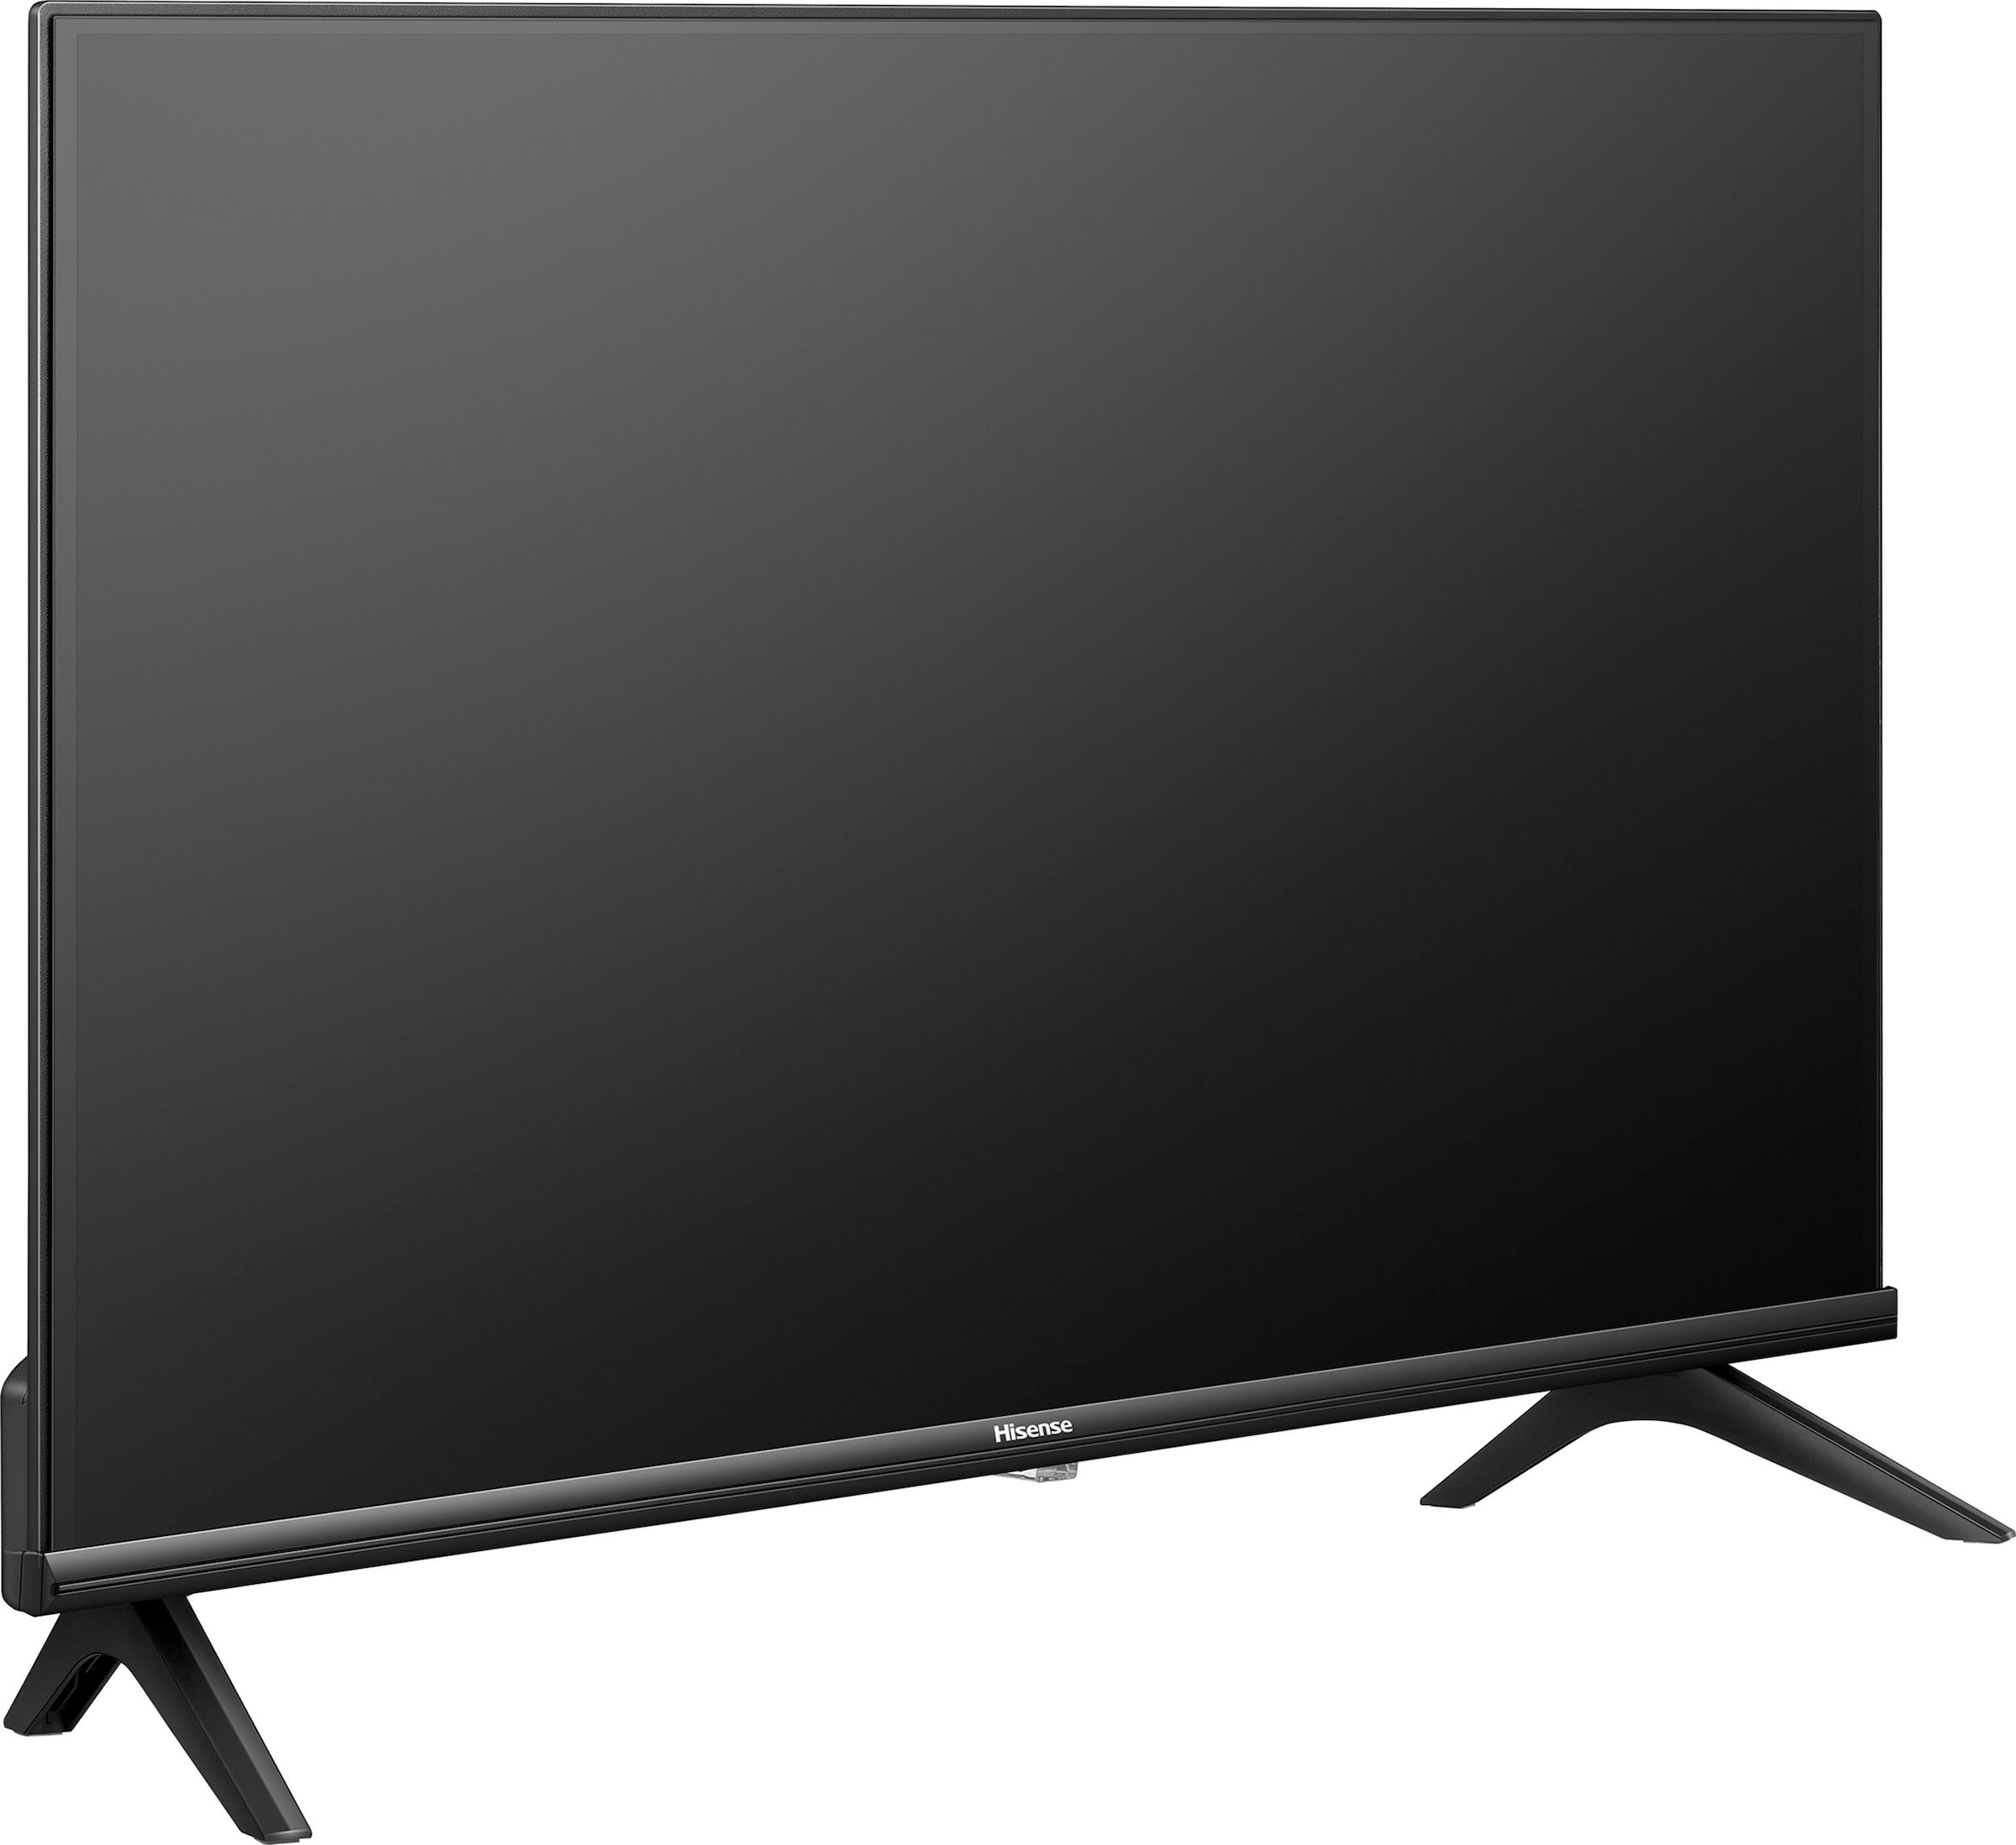 Hisense LED-Fernseher, 100 cm/40 Zoll, Full HD, Smart-TV, Smart-TV,Triple Tuner DVB-T2 / T/C / S2 / S